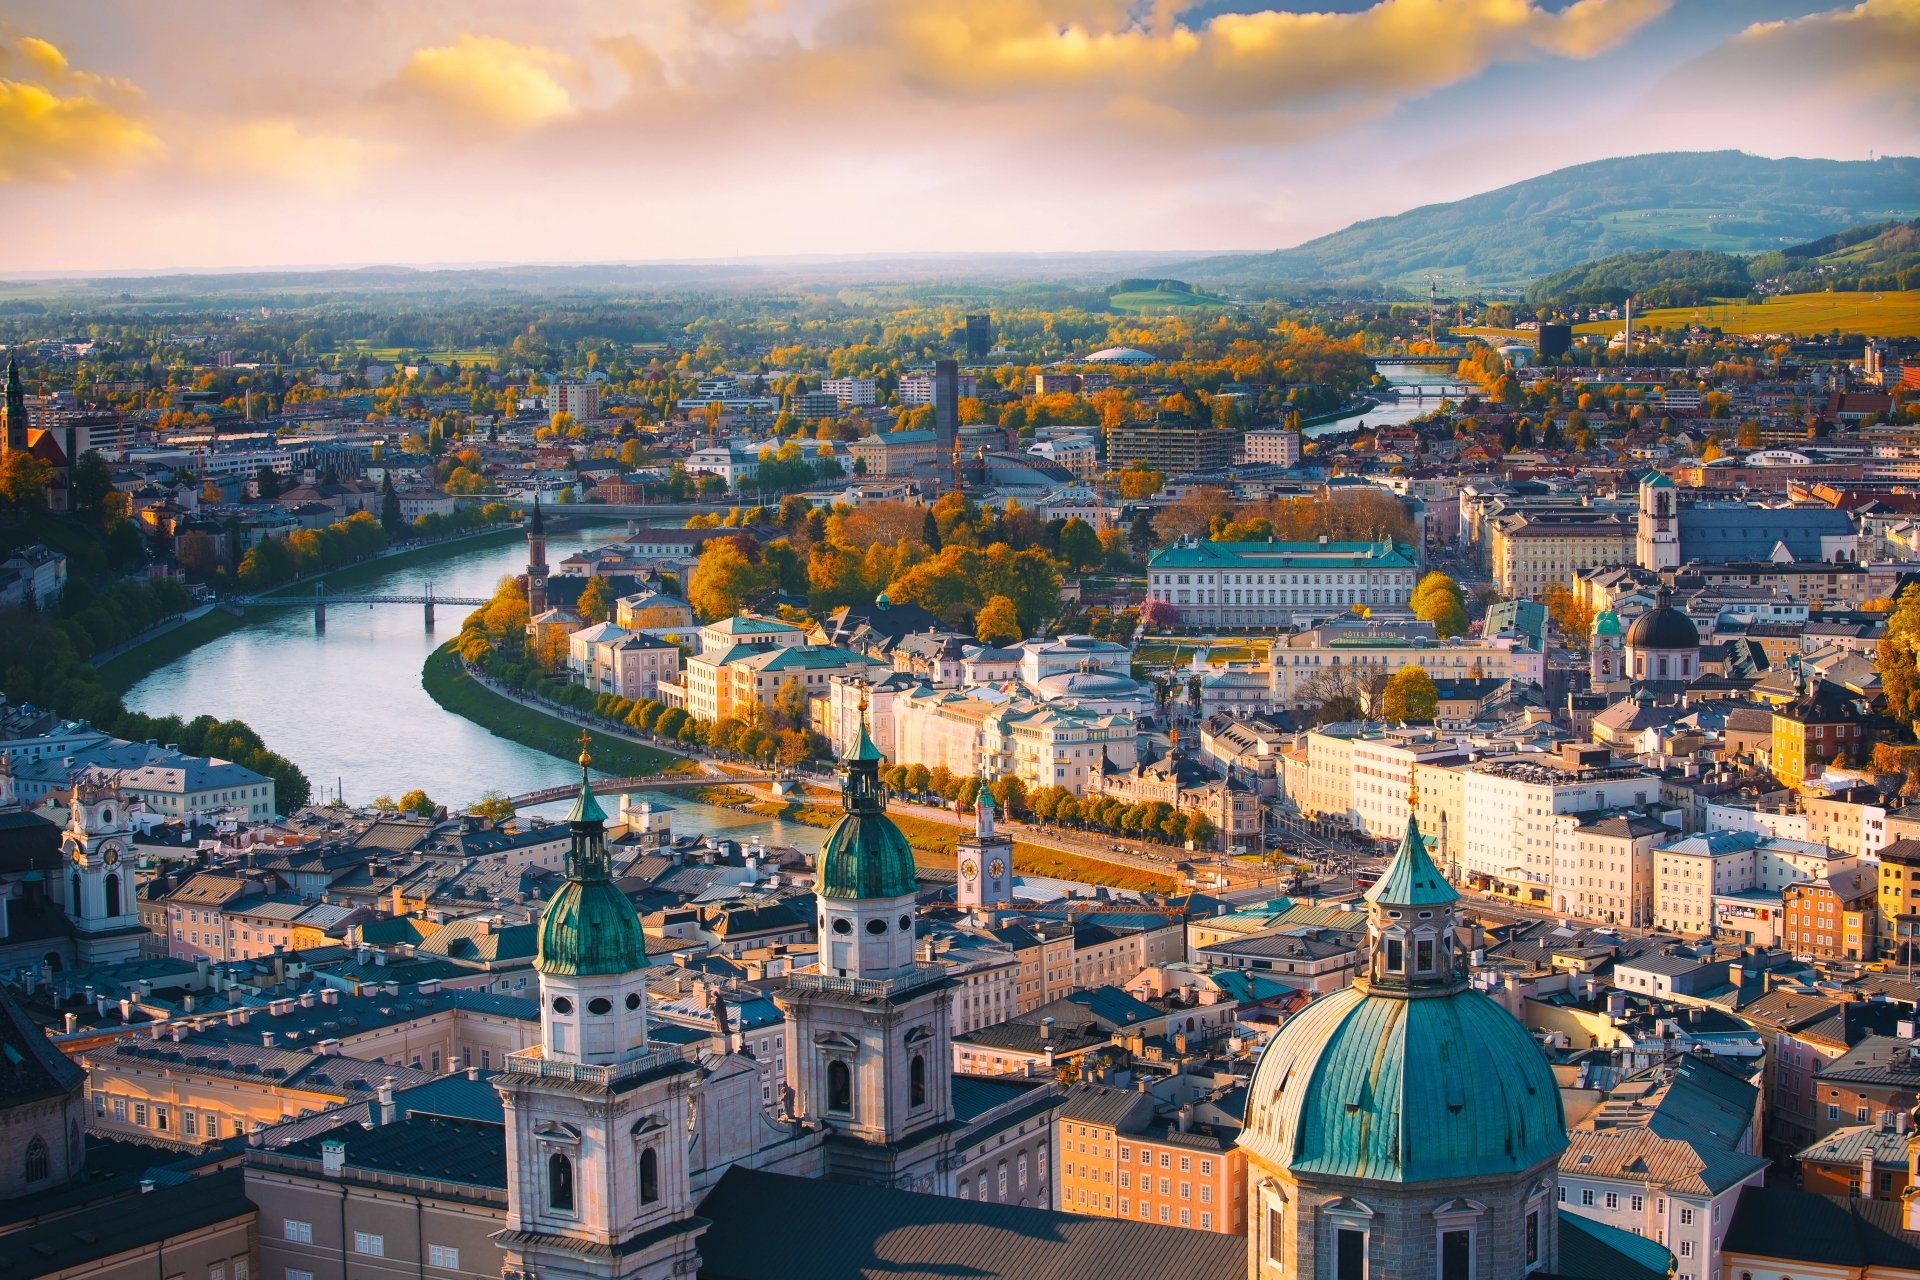 Ofertas en Booking para conocer el bellísimo centro de Viena este invierno